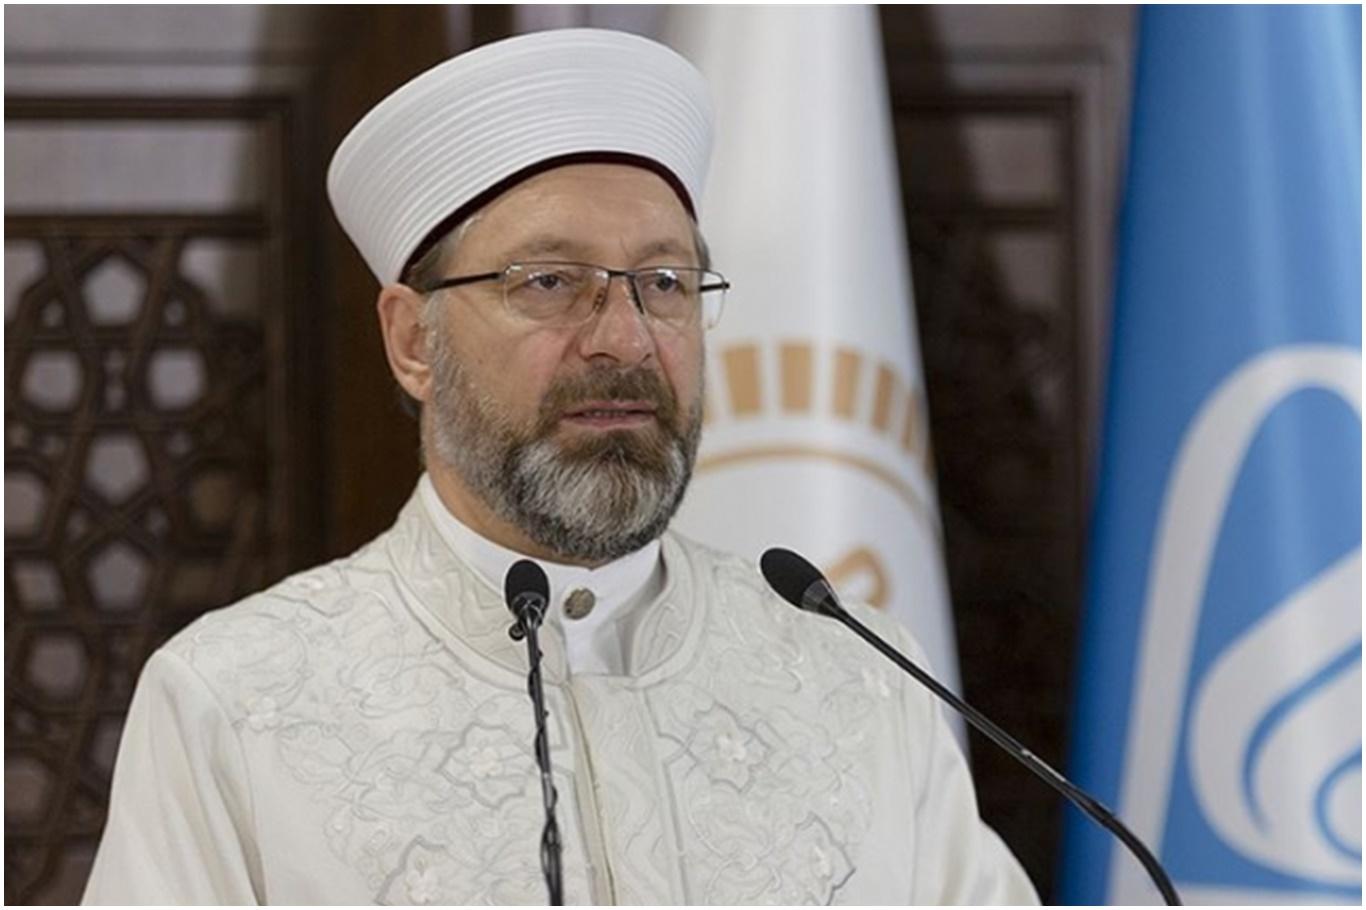 Diyanet İşleri Başkanı Erbaş: “Camiler, minareler bizim en önemli değerimiz”